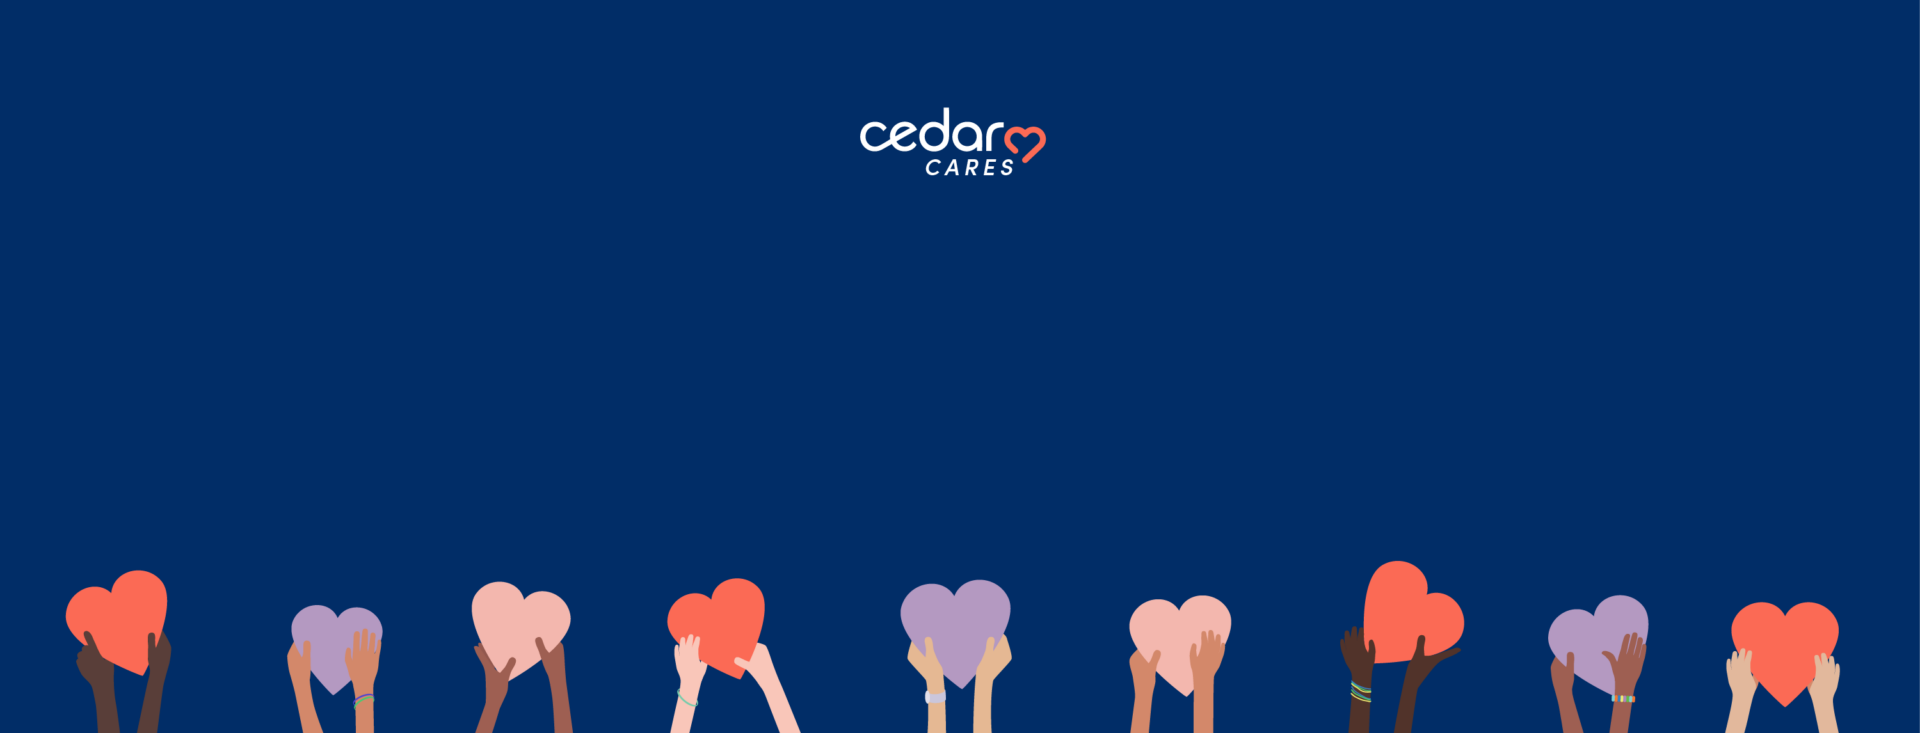 Cedar Cares